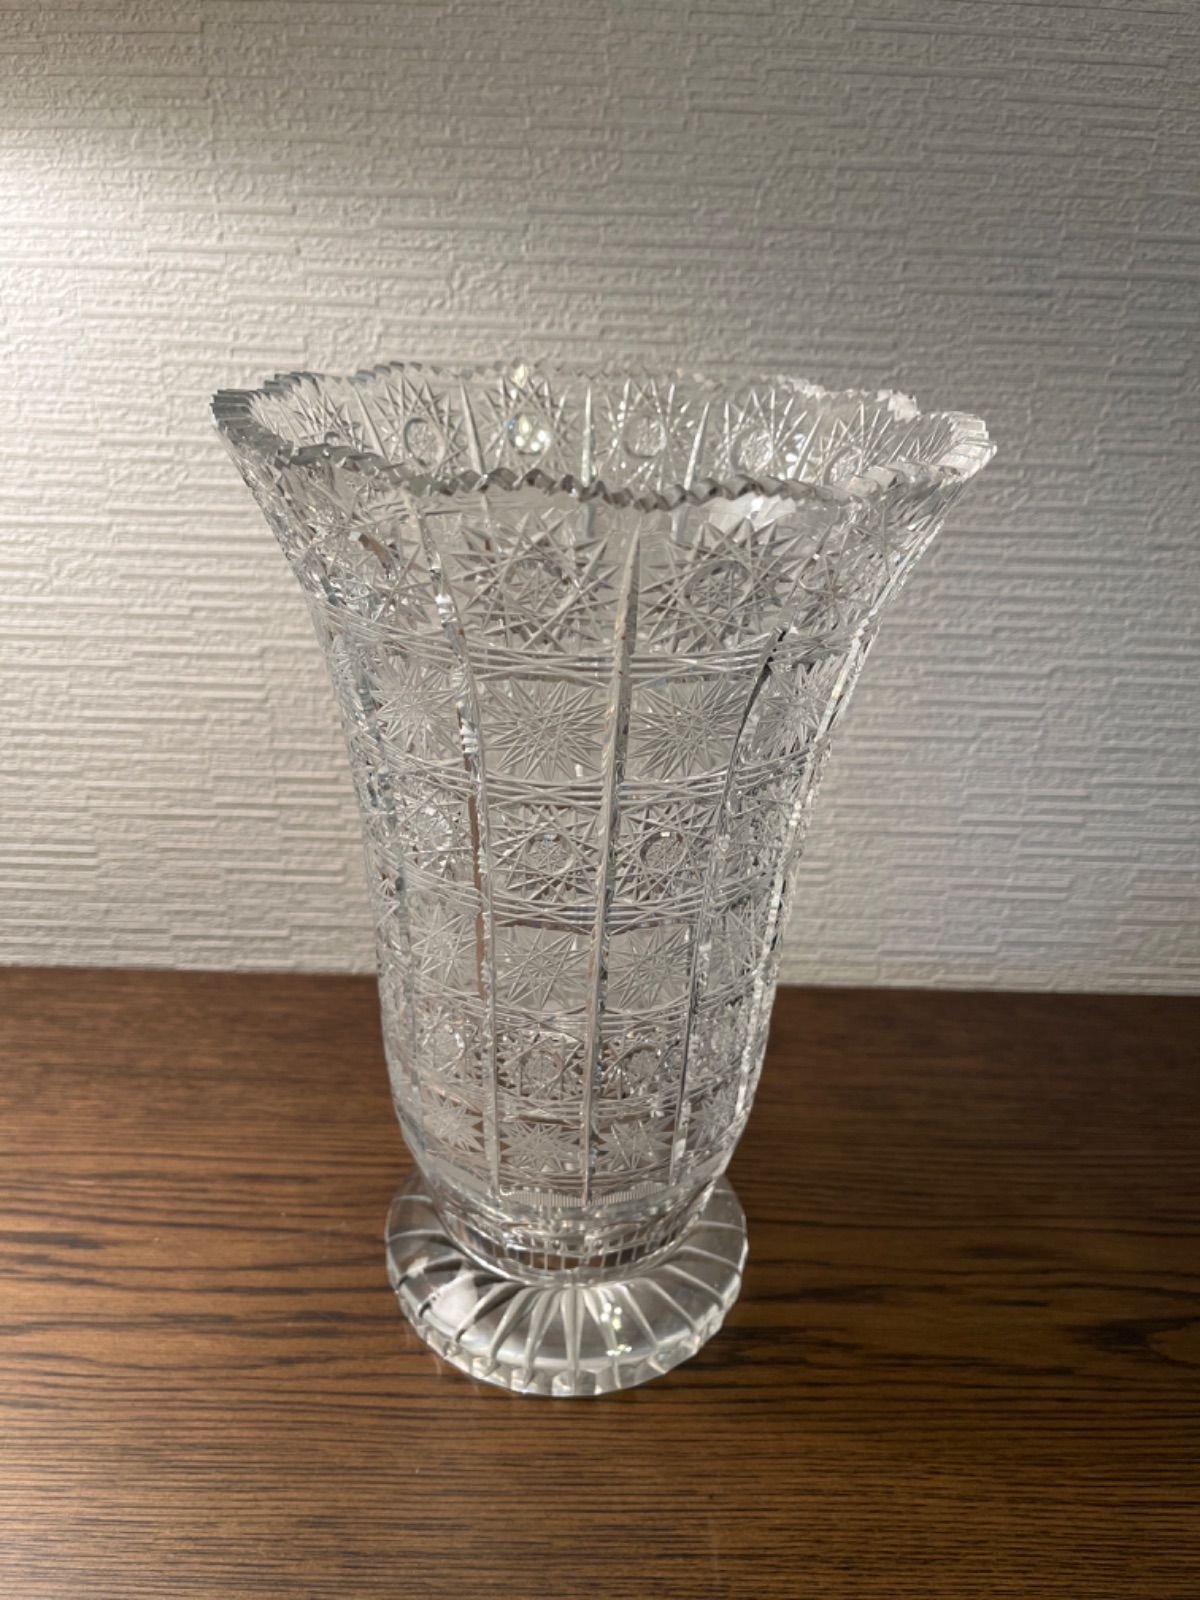 お値打ち価格! ボヘミアクリスタルガラス 切子細工 花瓶 フラワーベース特大型サイズ